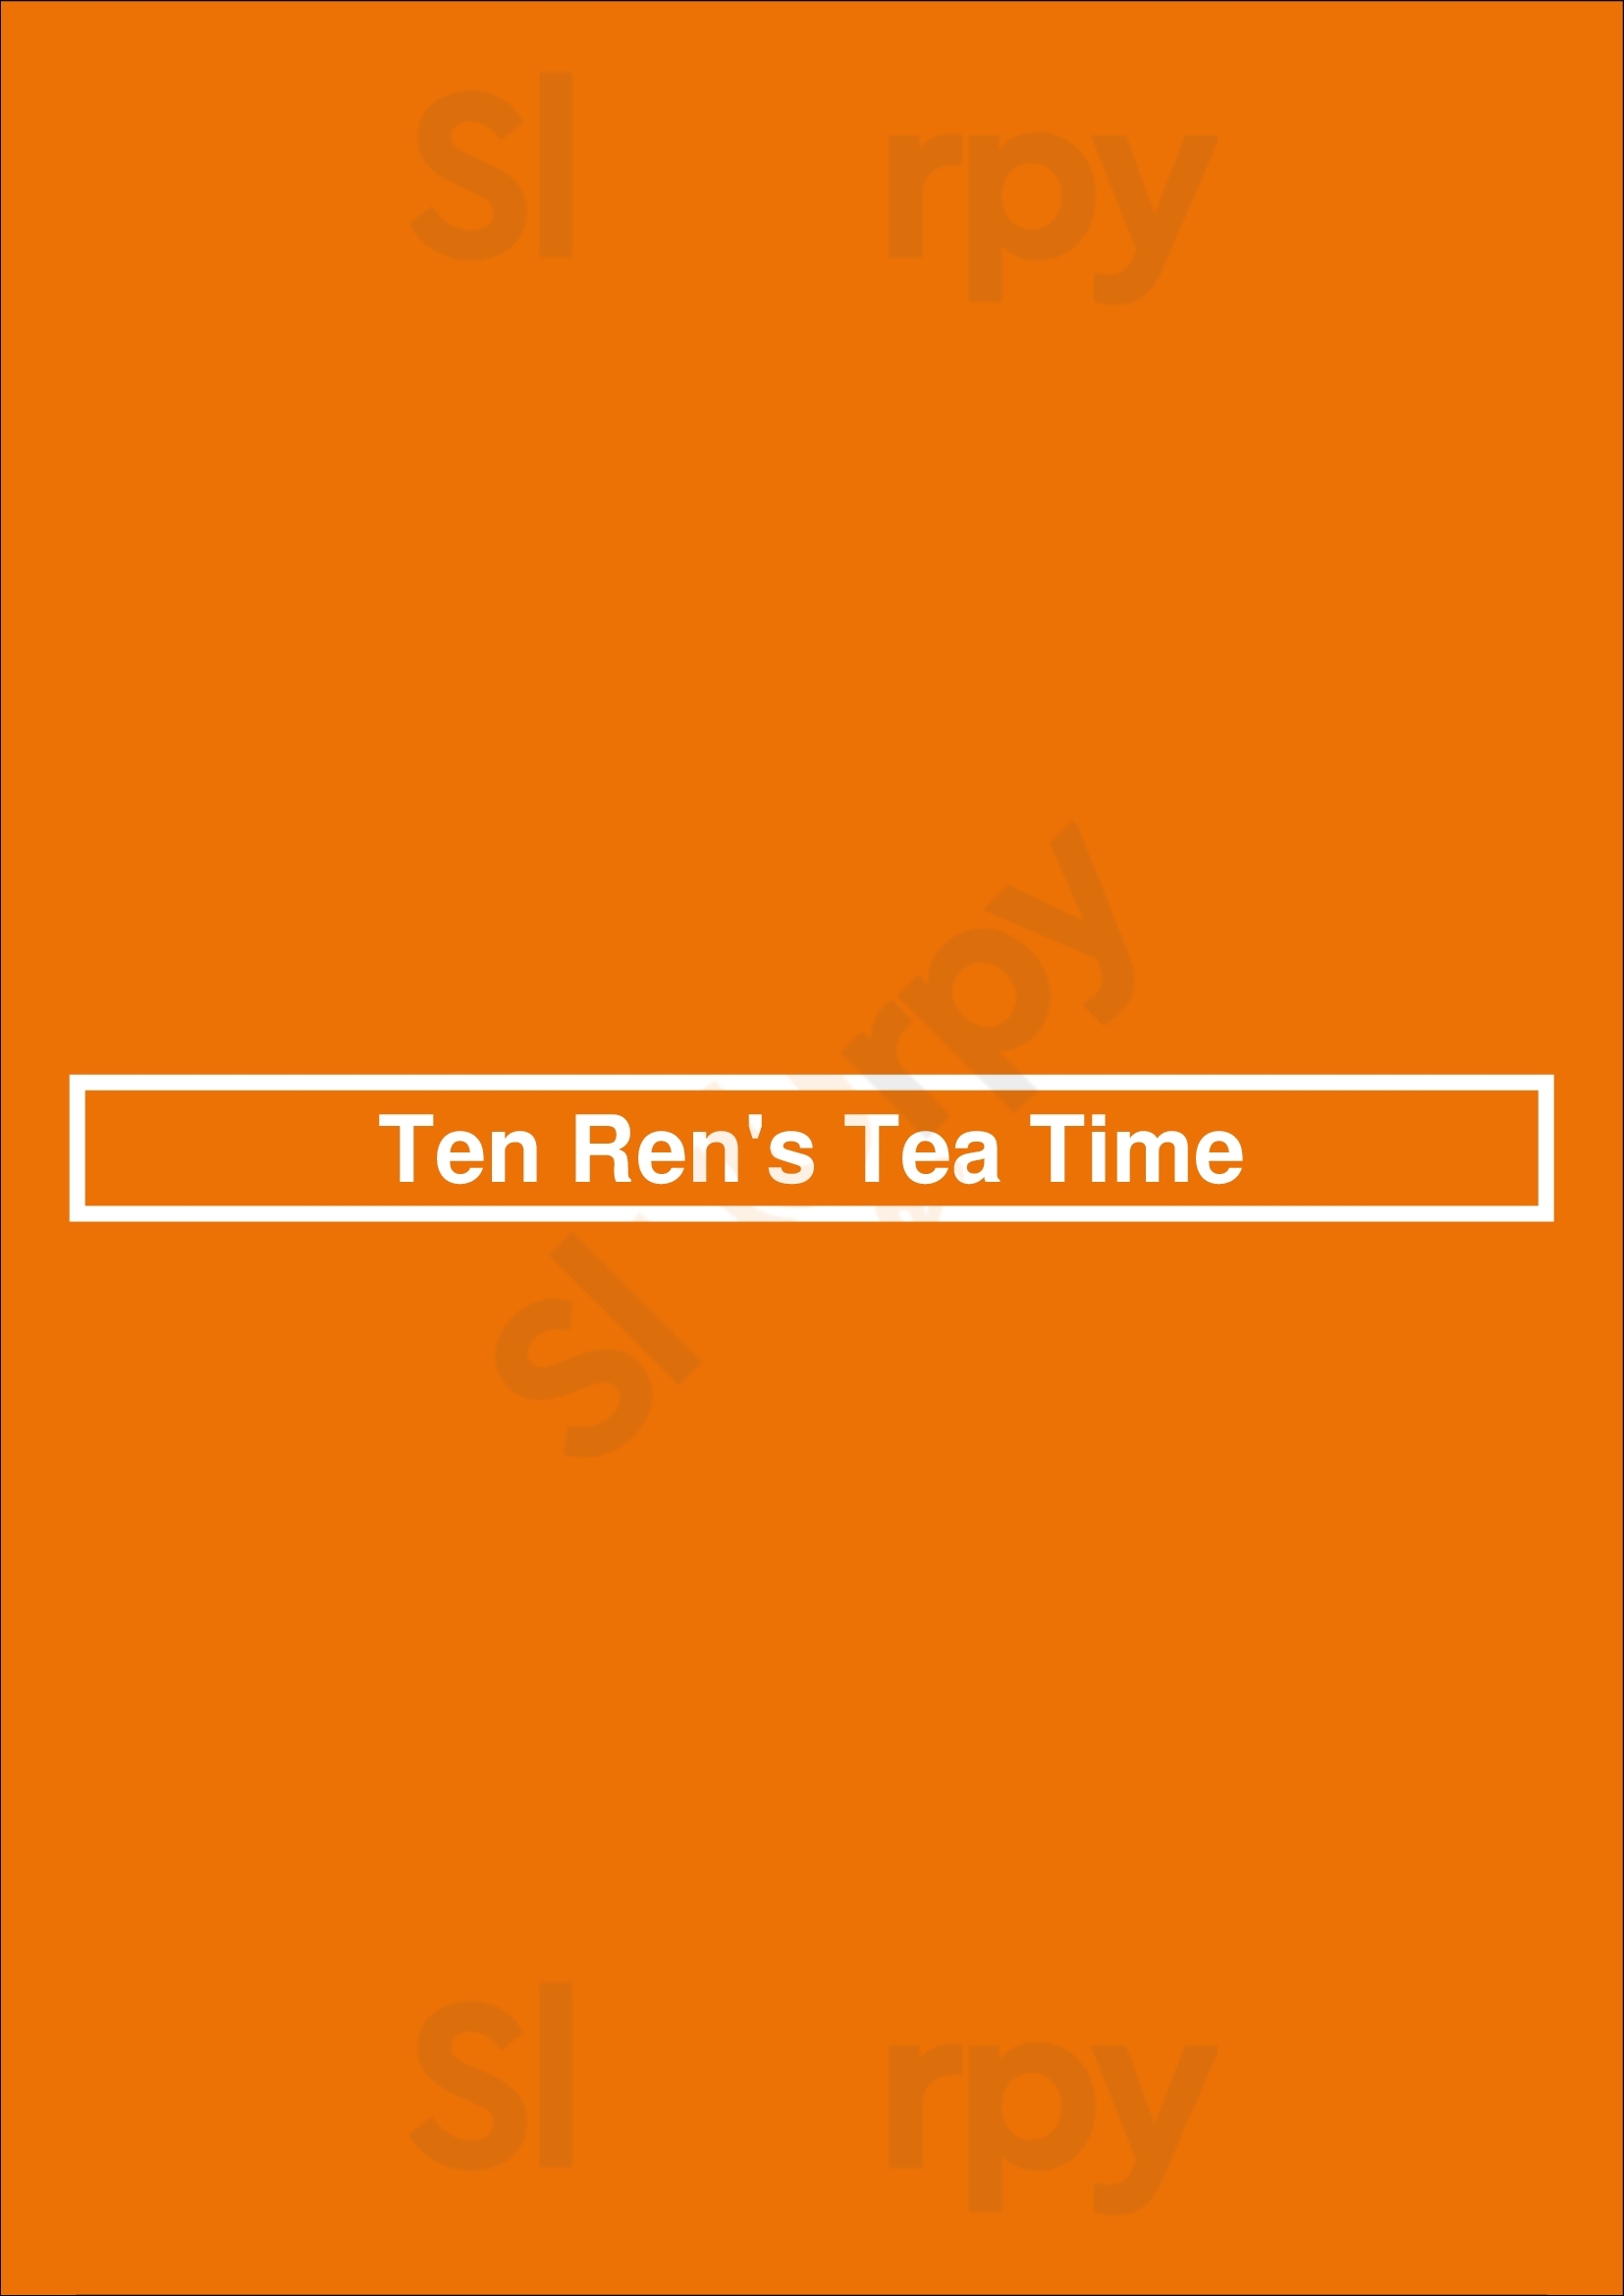 Ten Ren's Tea Time Rowland Heights Menu - 1